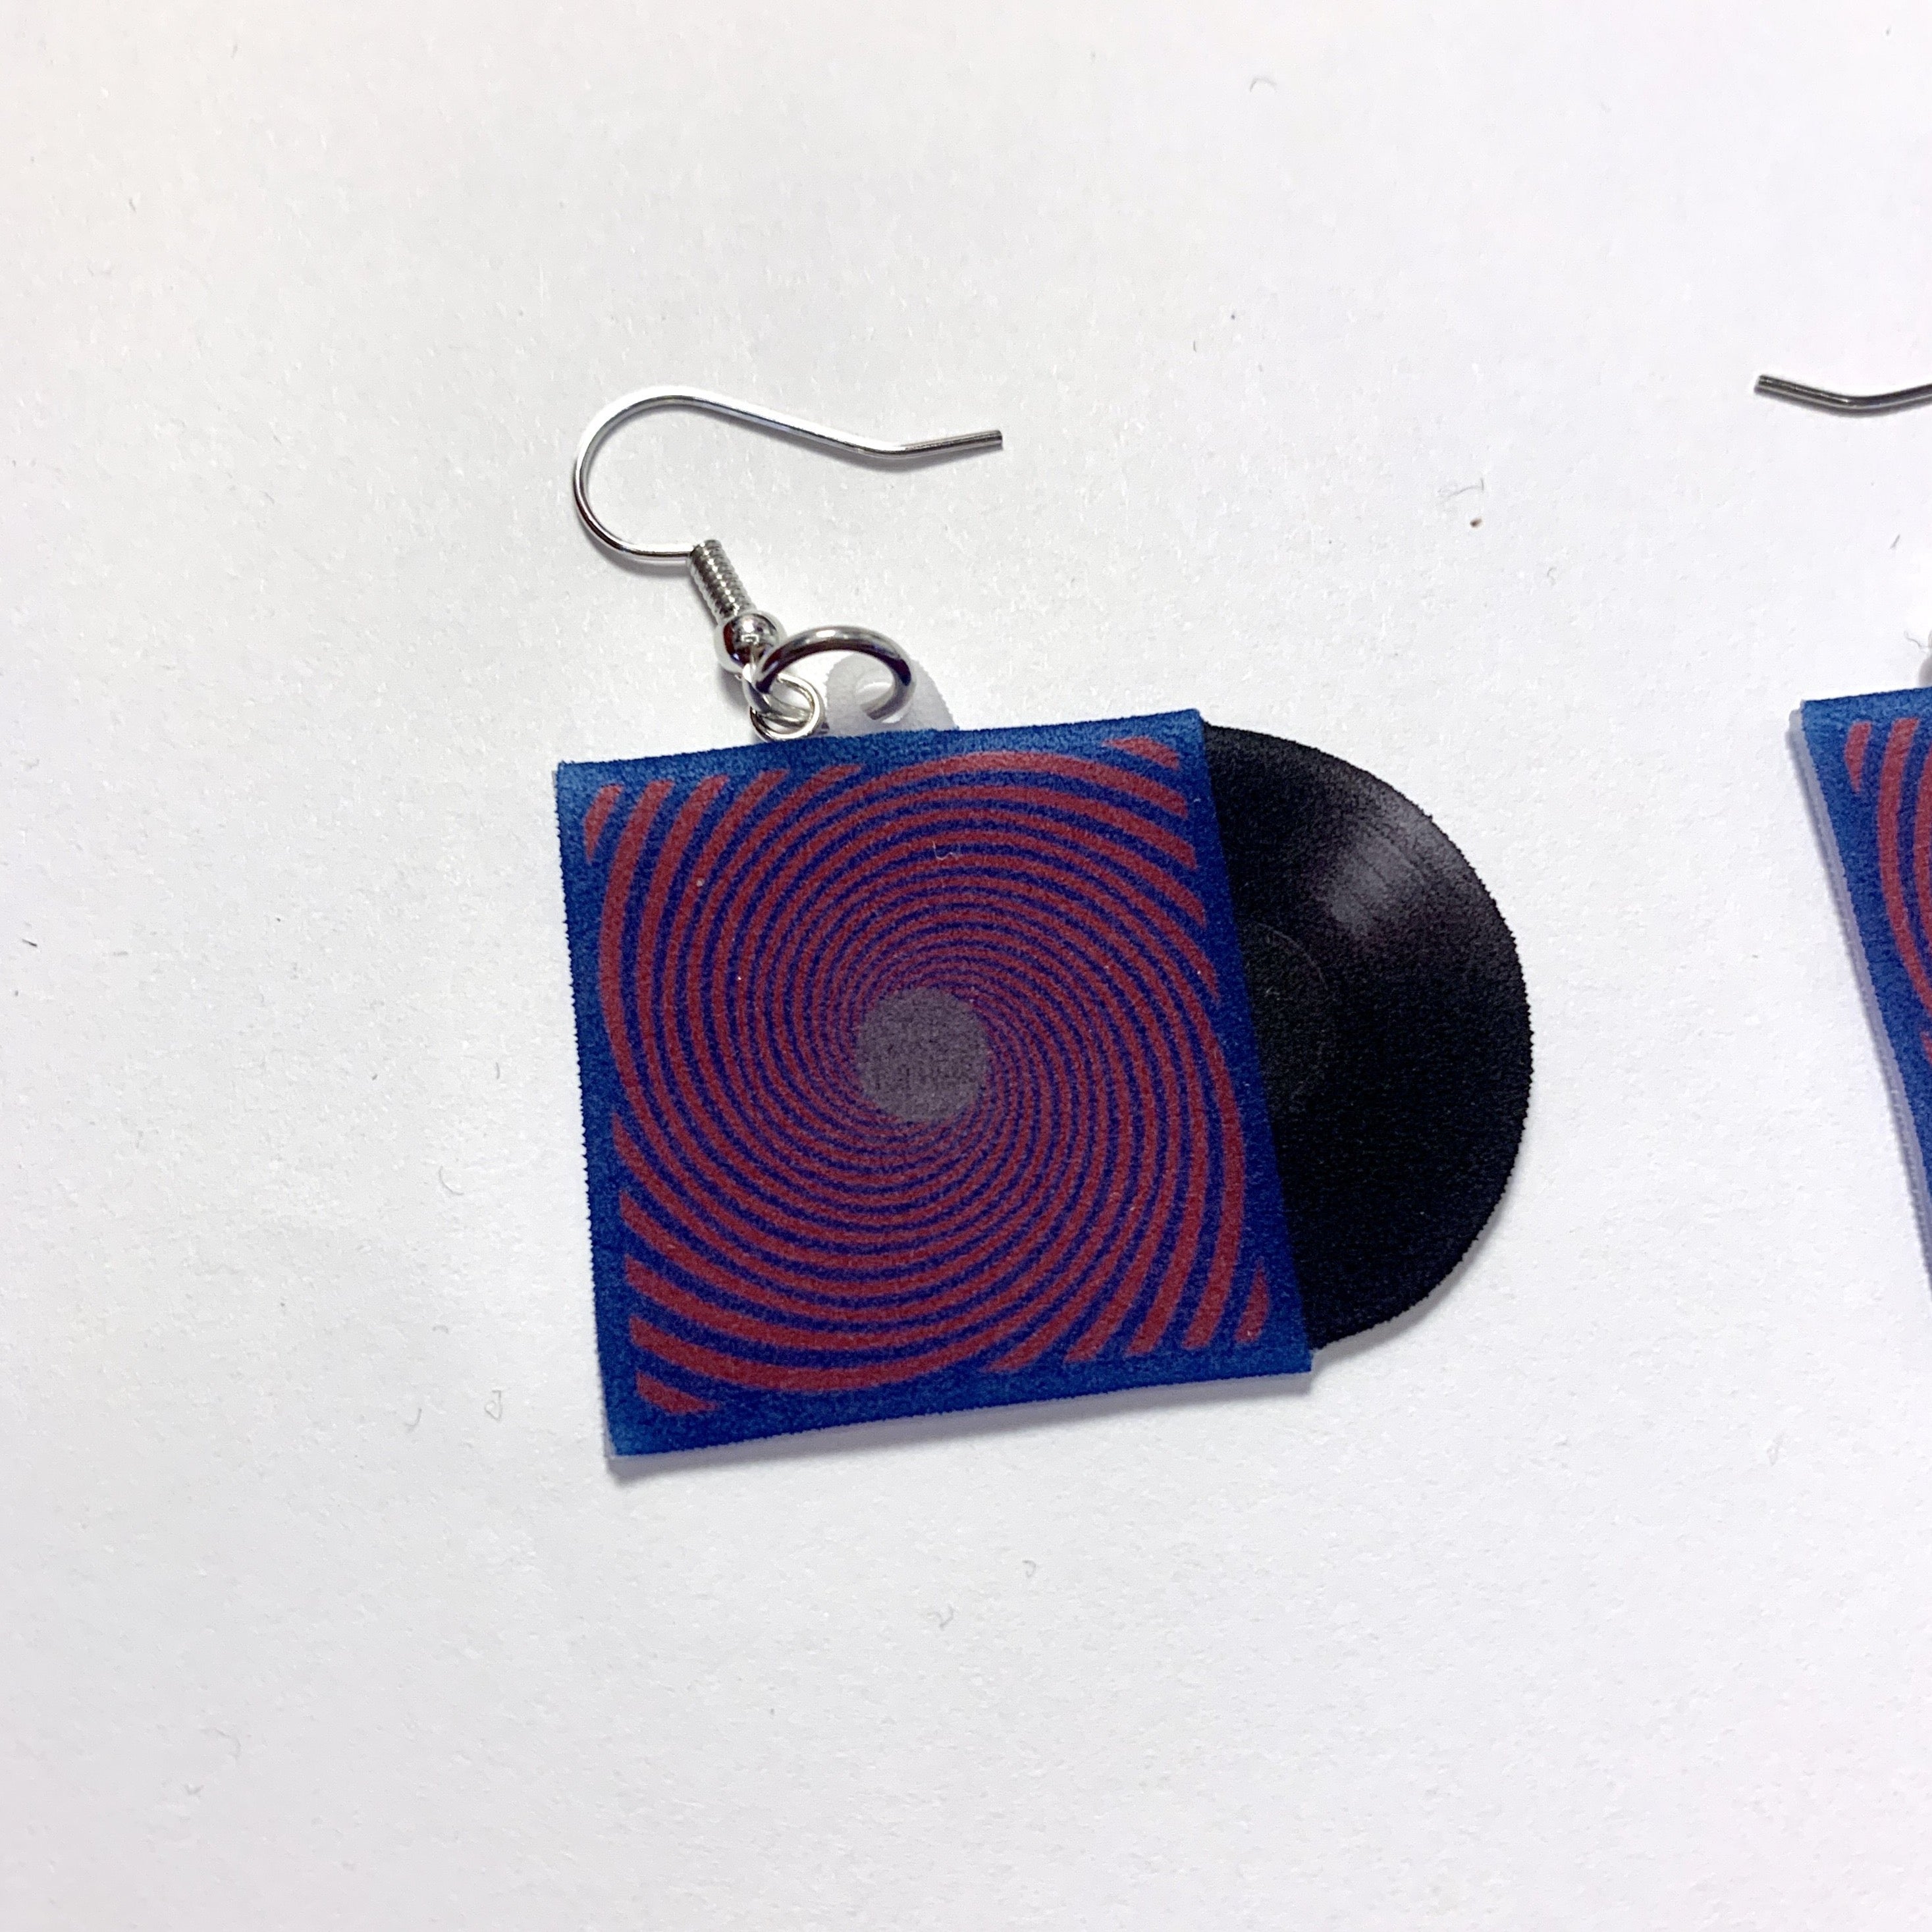 The Black Keys Turn Blue Vinyl Album Handmade Earrings!